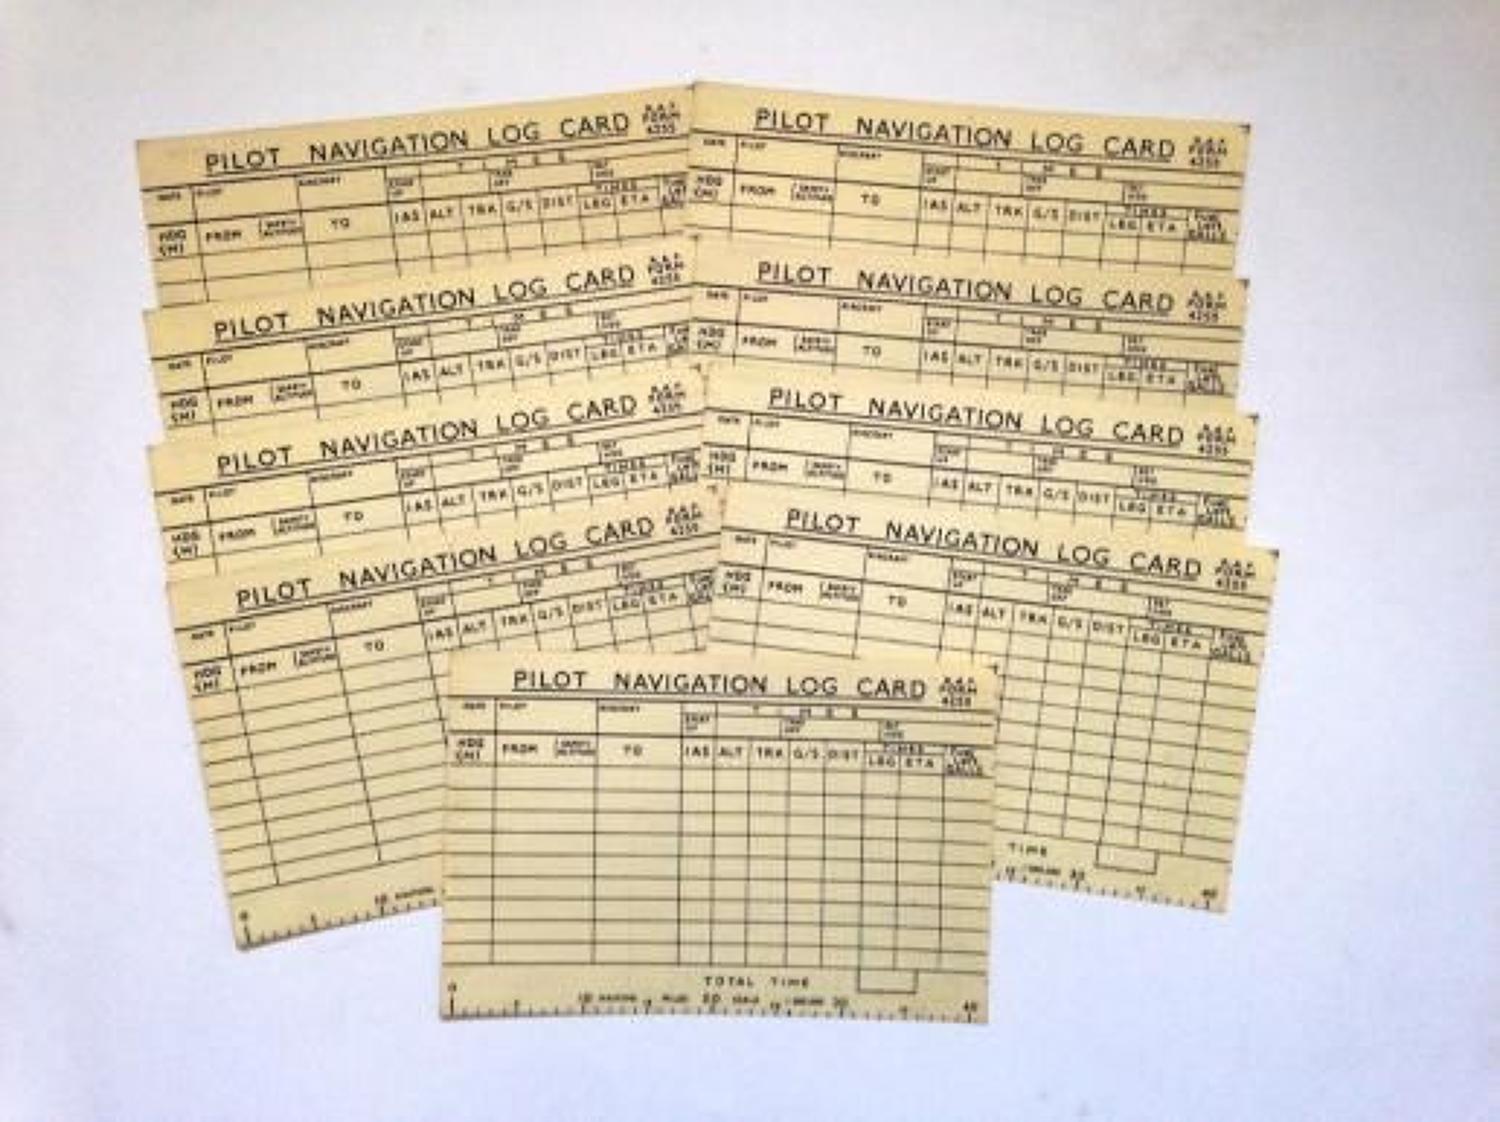 RAF Form 4255 Pilot Navigation Log Card.